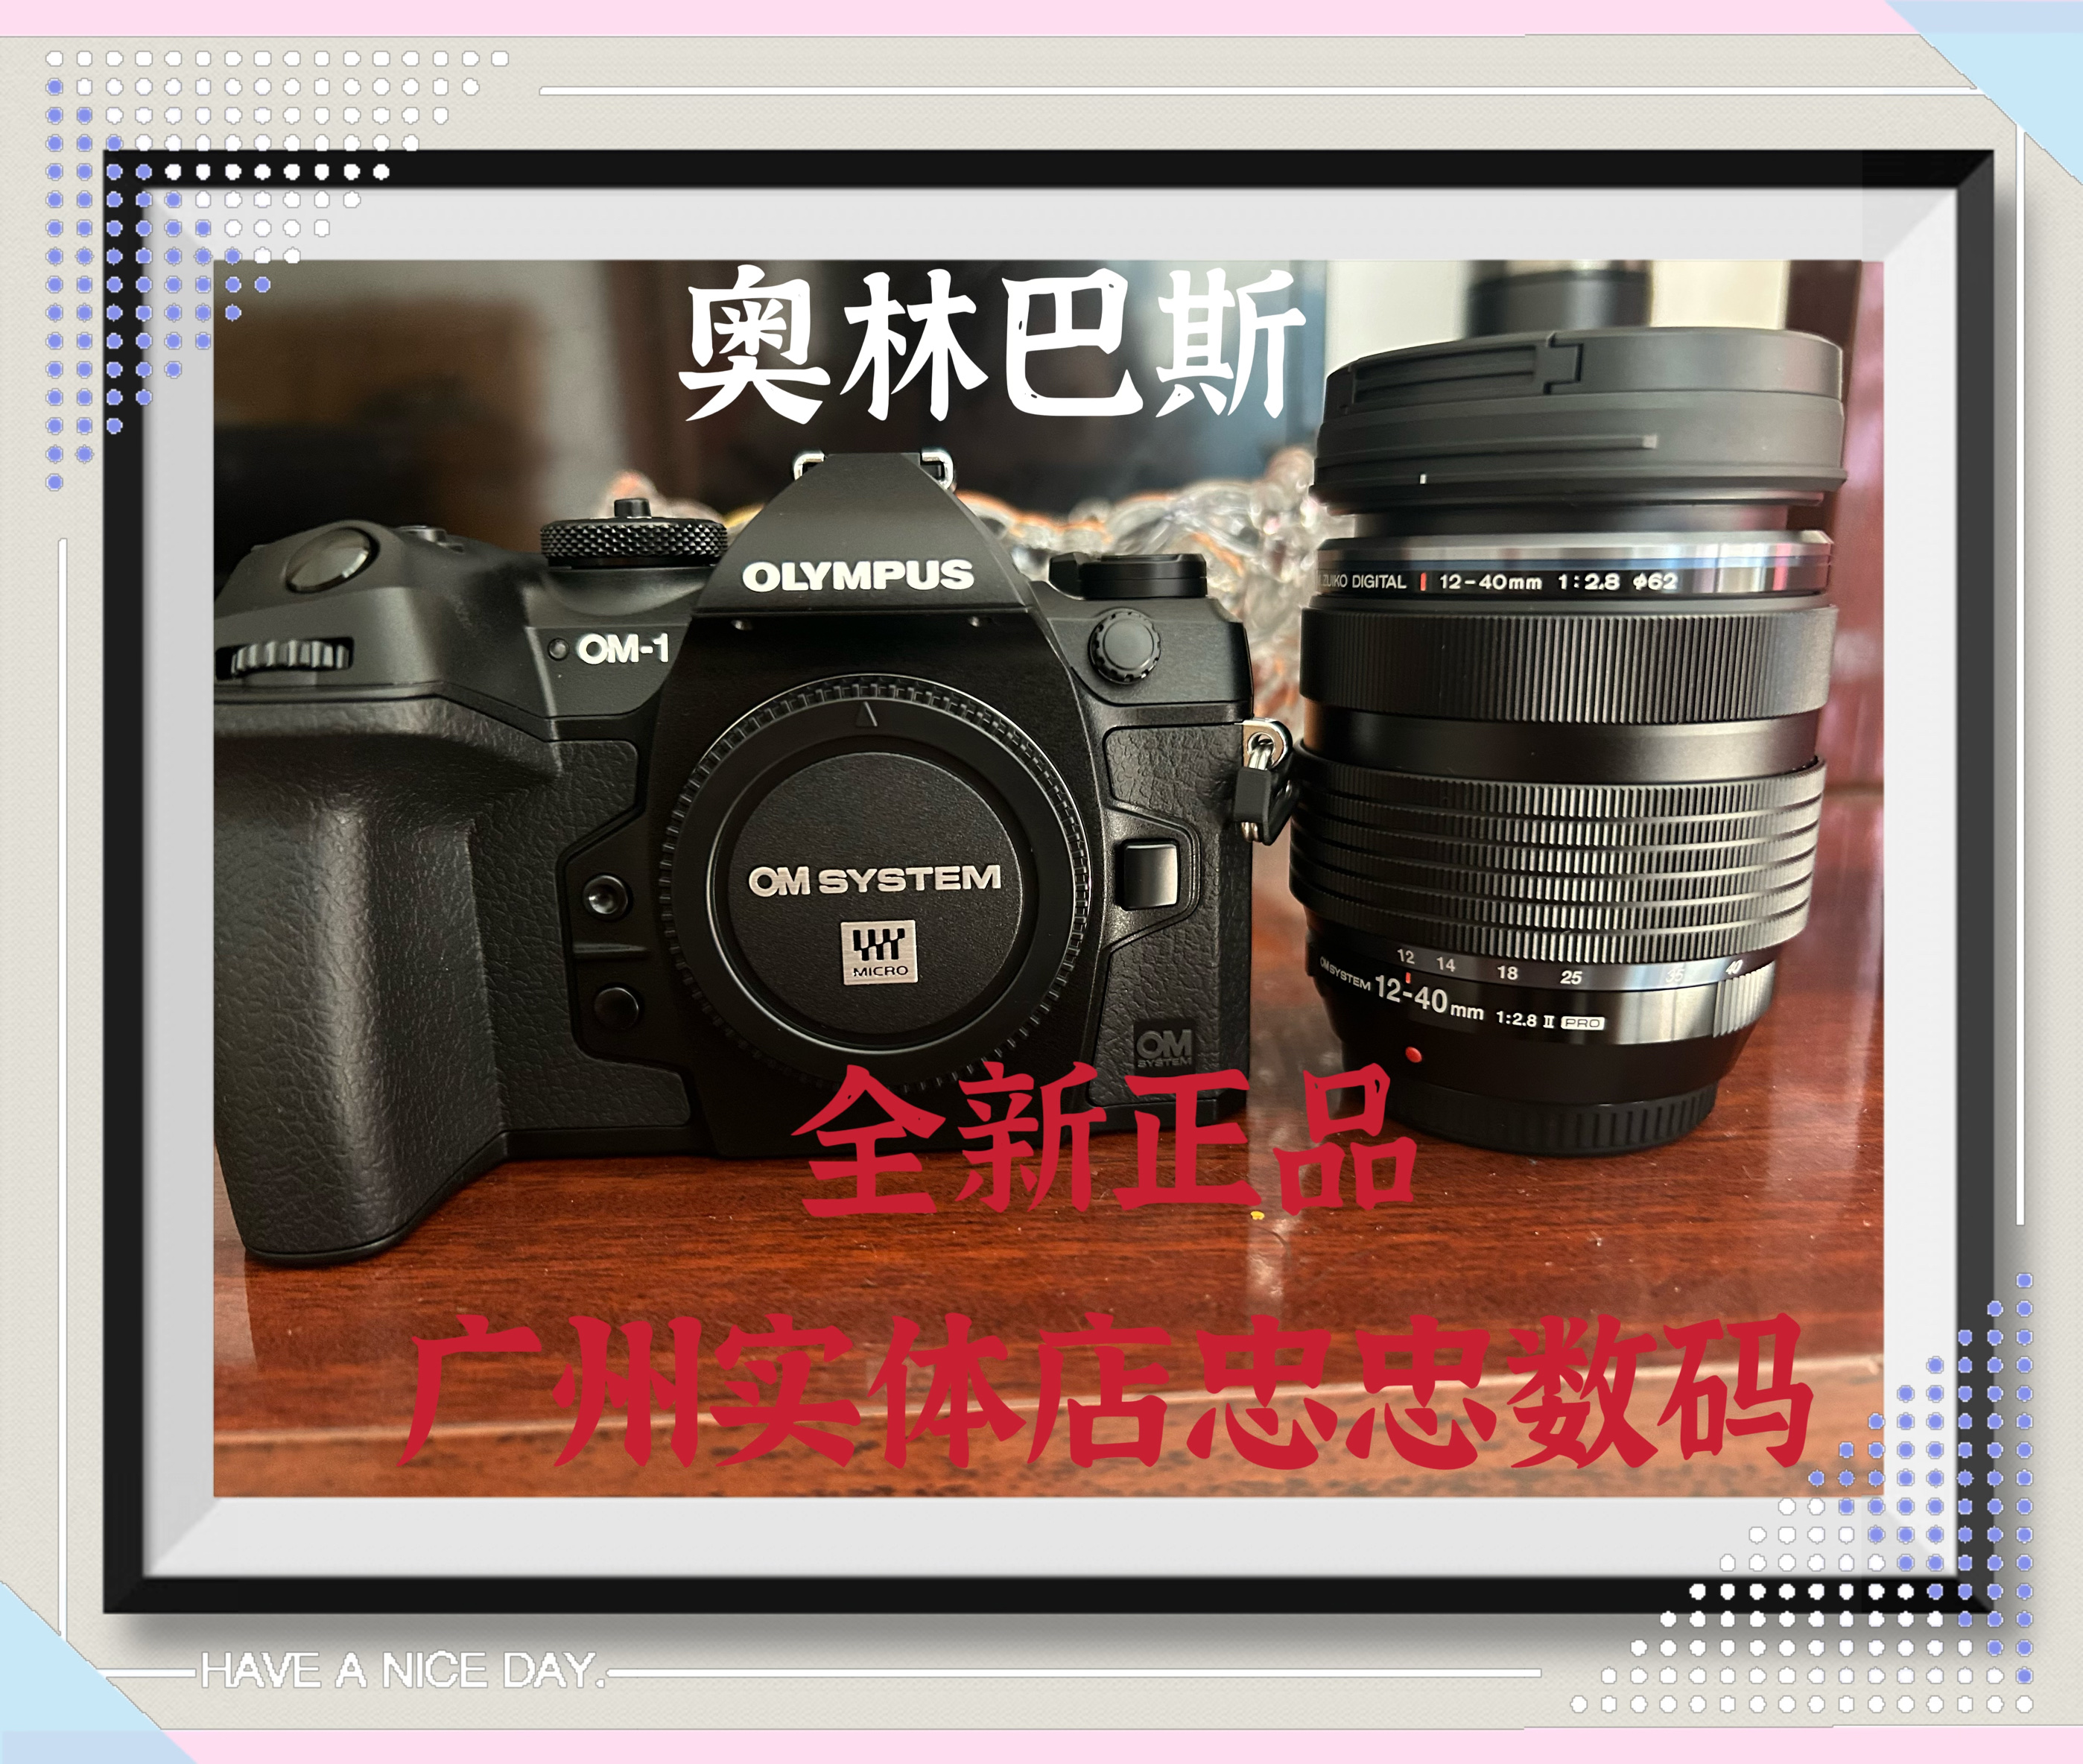 全新现货 奥林巴斯OM1 相机OM-1 ED12-40F2.8 PROII镜头 套装